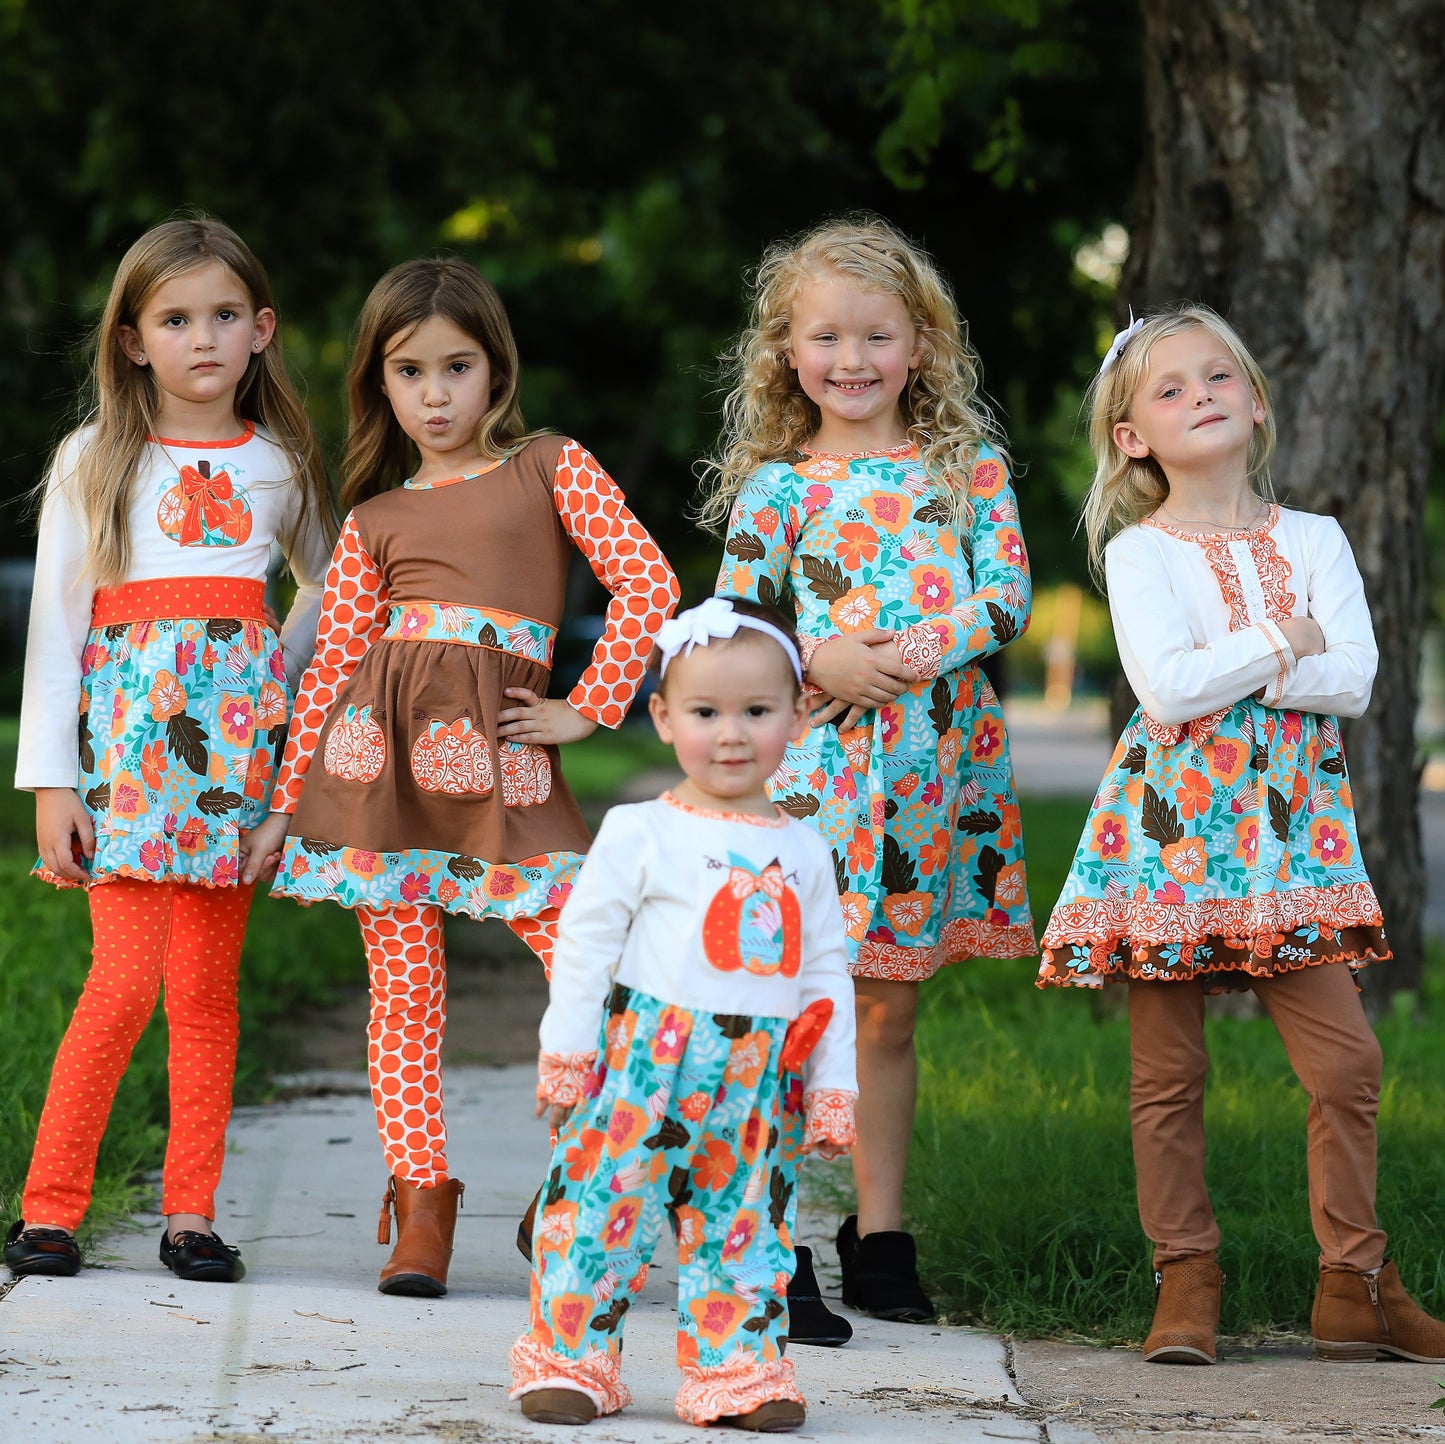 AnnLoren Little & Big Girls Boutique Autumn Leaves Floral Cotton Long Sleeve Dress sz 2/3T-11/12